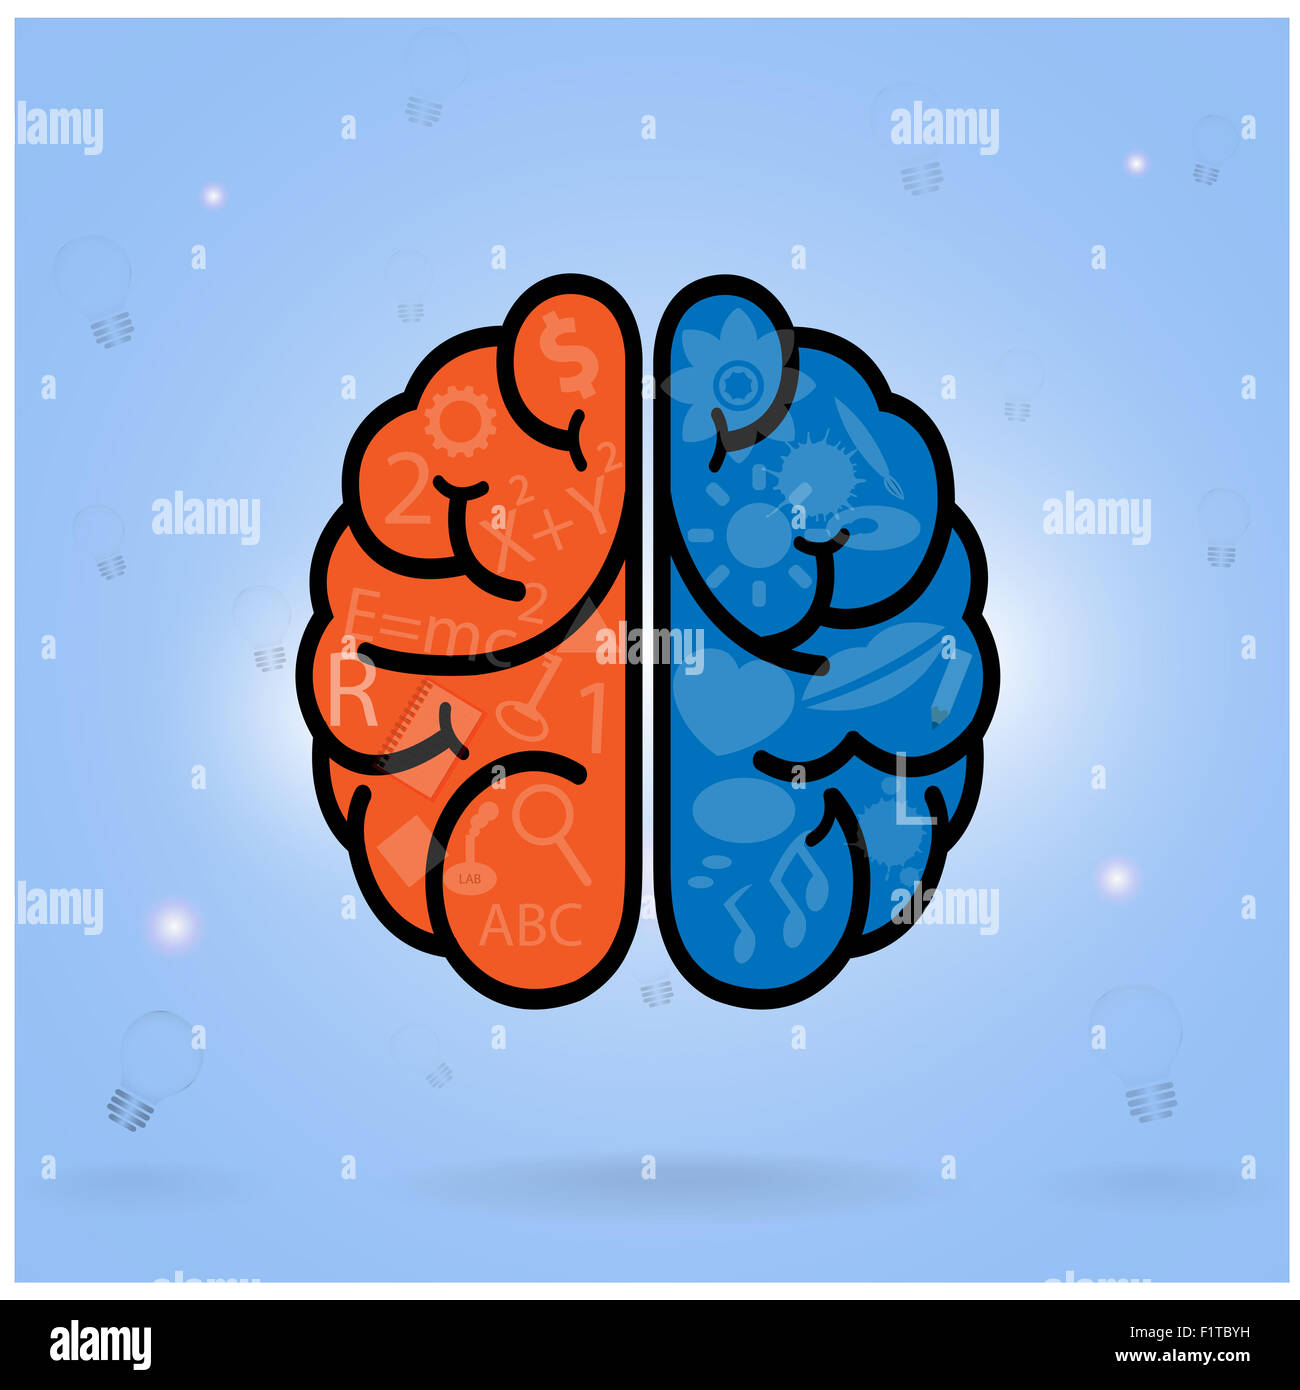 Creative Left Brain And Right Brain Idea Concept Background Design Stock Photo Alamy